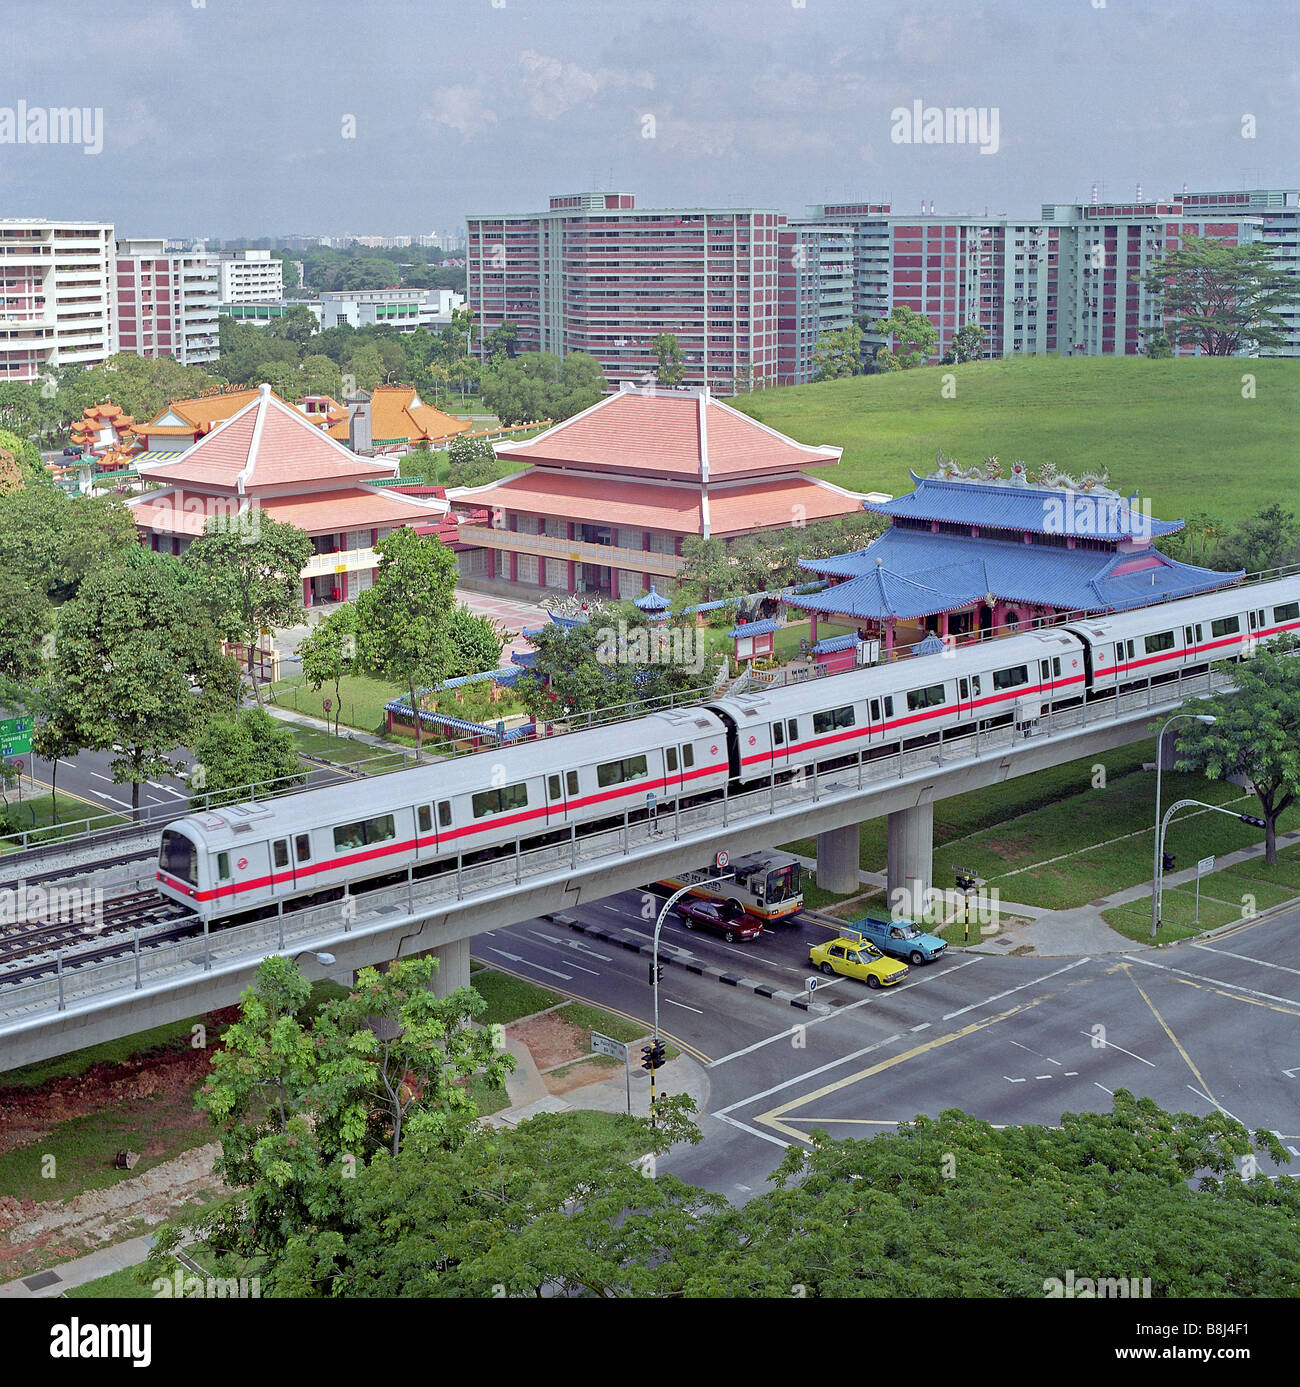 Sección elevada en tren de tránsito rápido masivo de Singapur que transporta grandes cantidades de pasajeros con rapidez y seguridad. Foto de stock